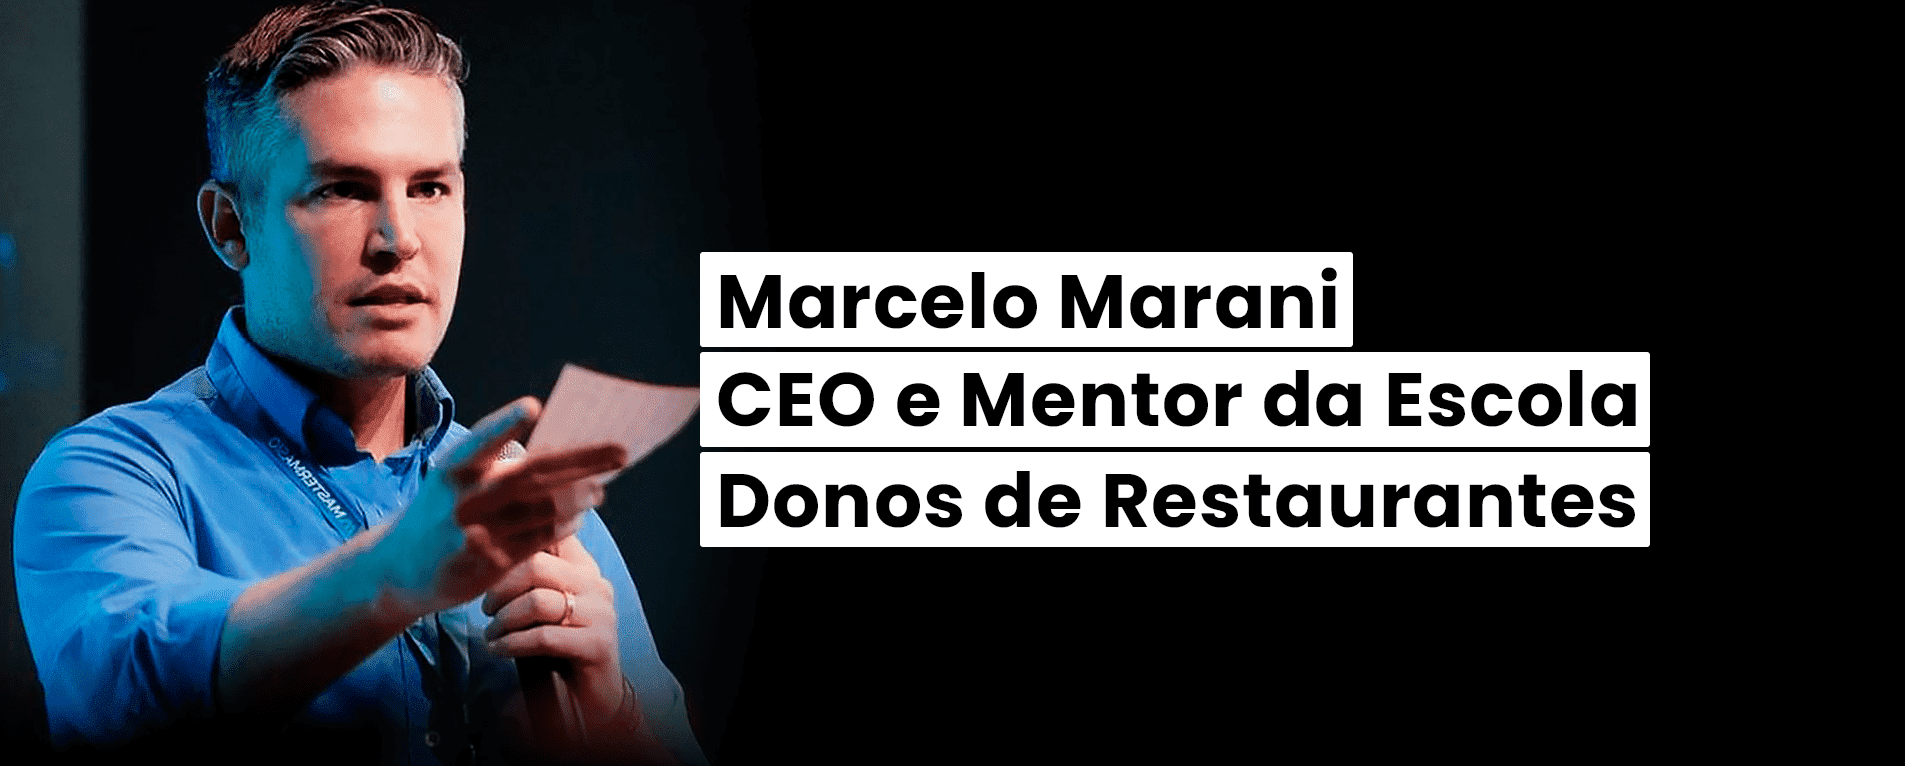 Marcelo Marani: CEO e Mentor da Escola Donos de Restaurantes